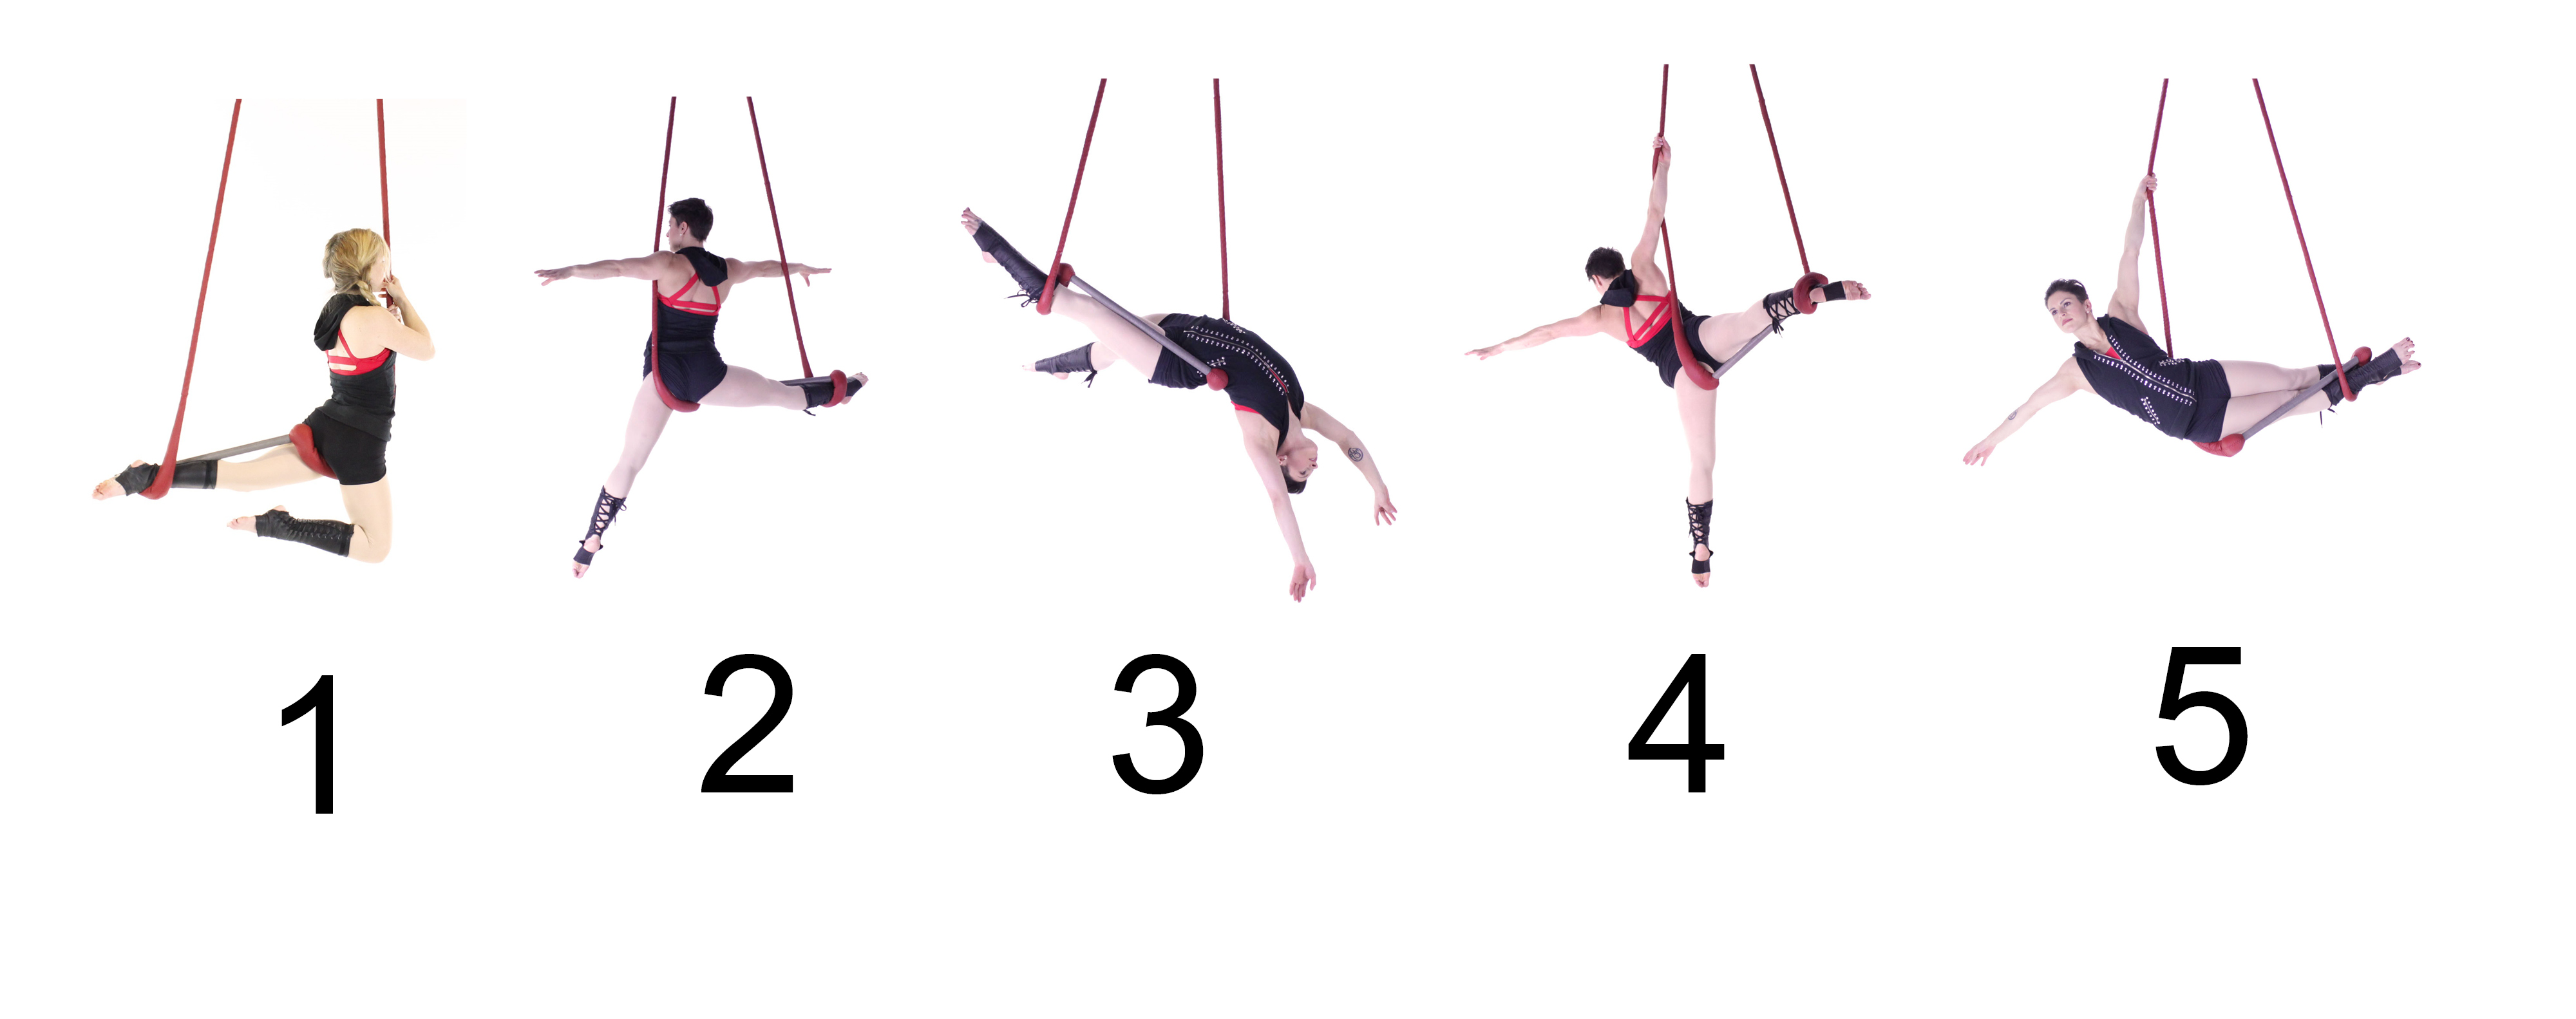 trapeze moves